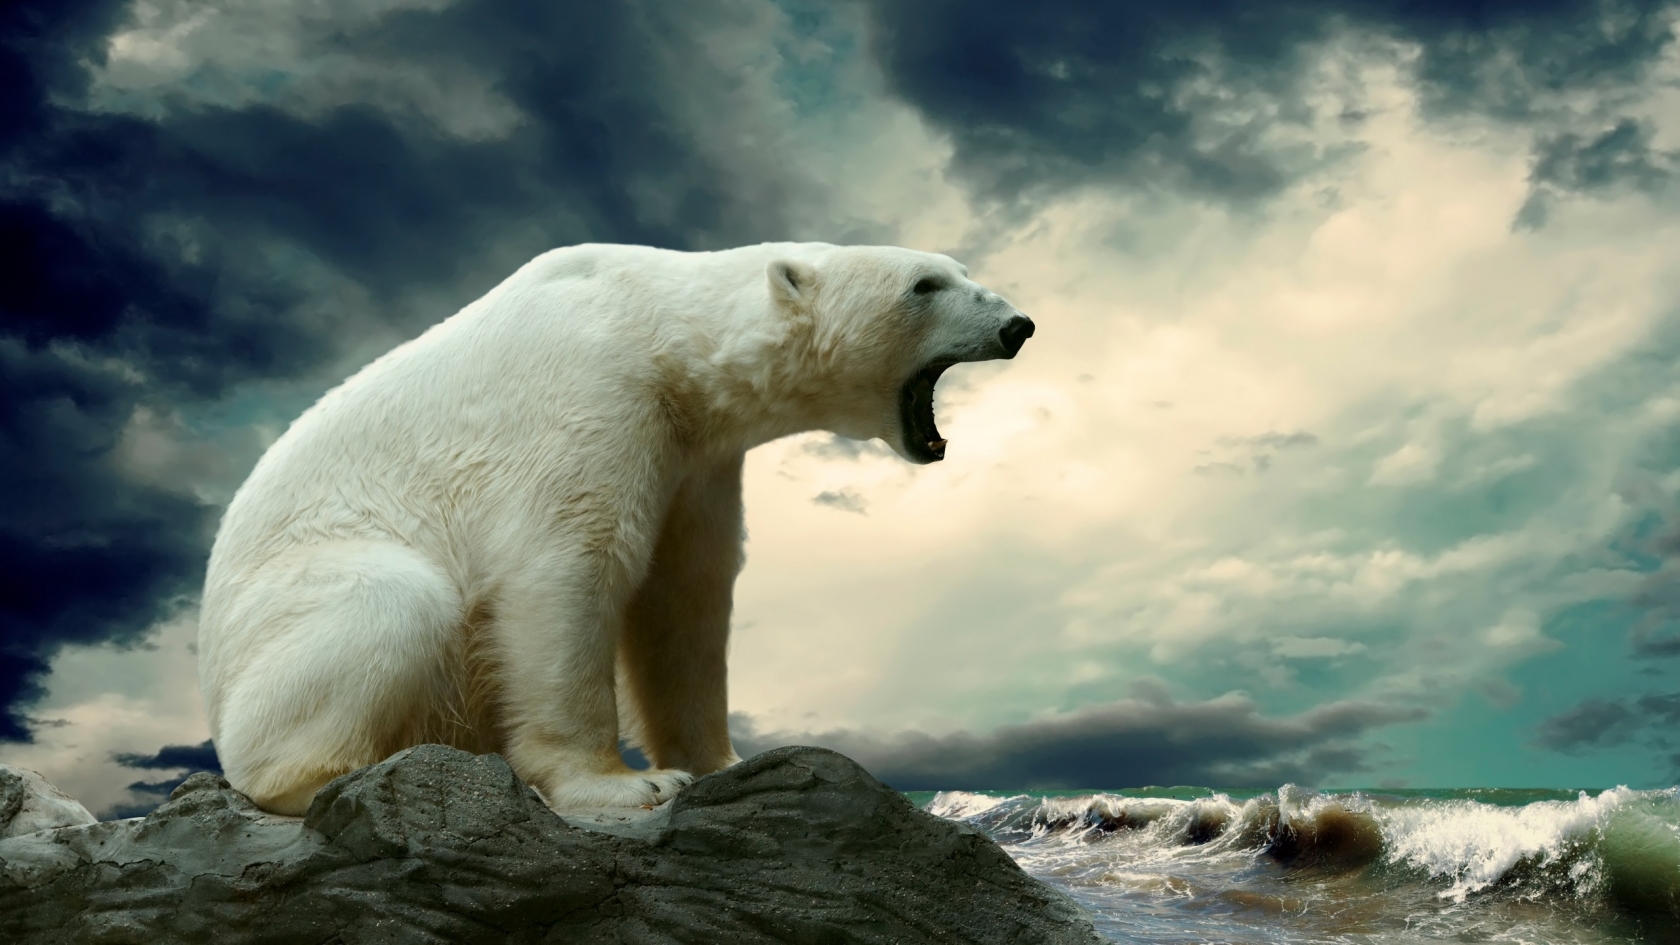 Polar Bear Shouting for 1680 x 945 HDTV resolution